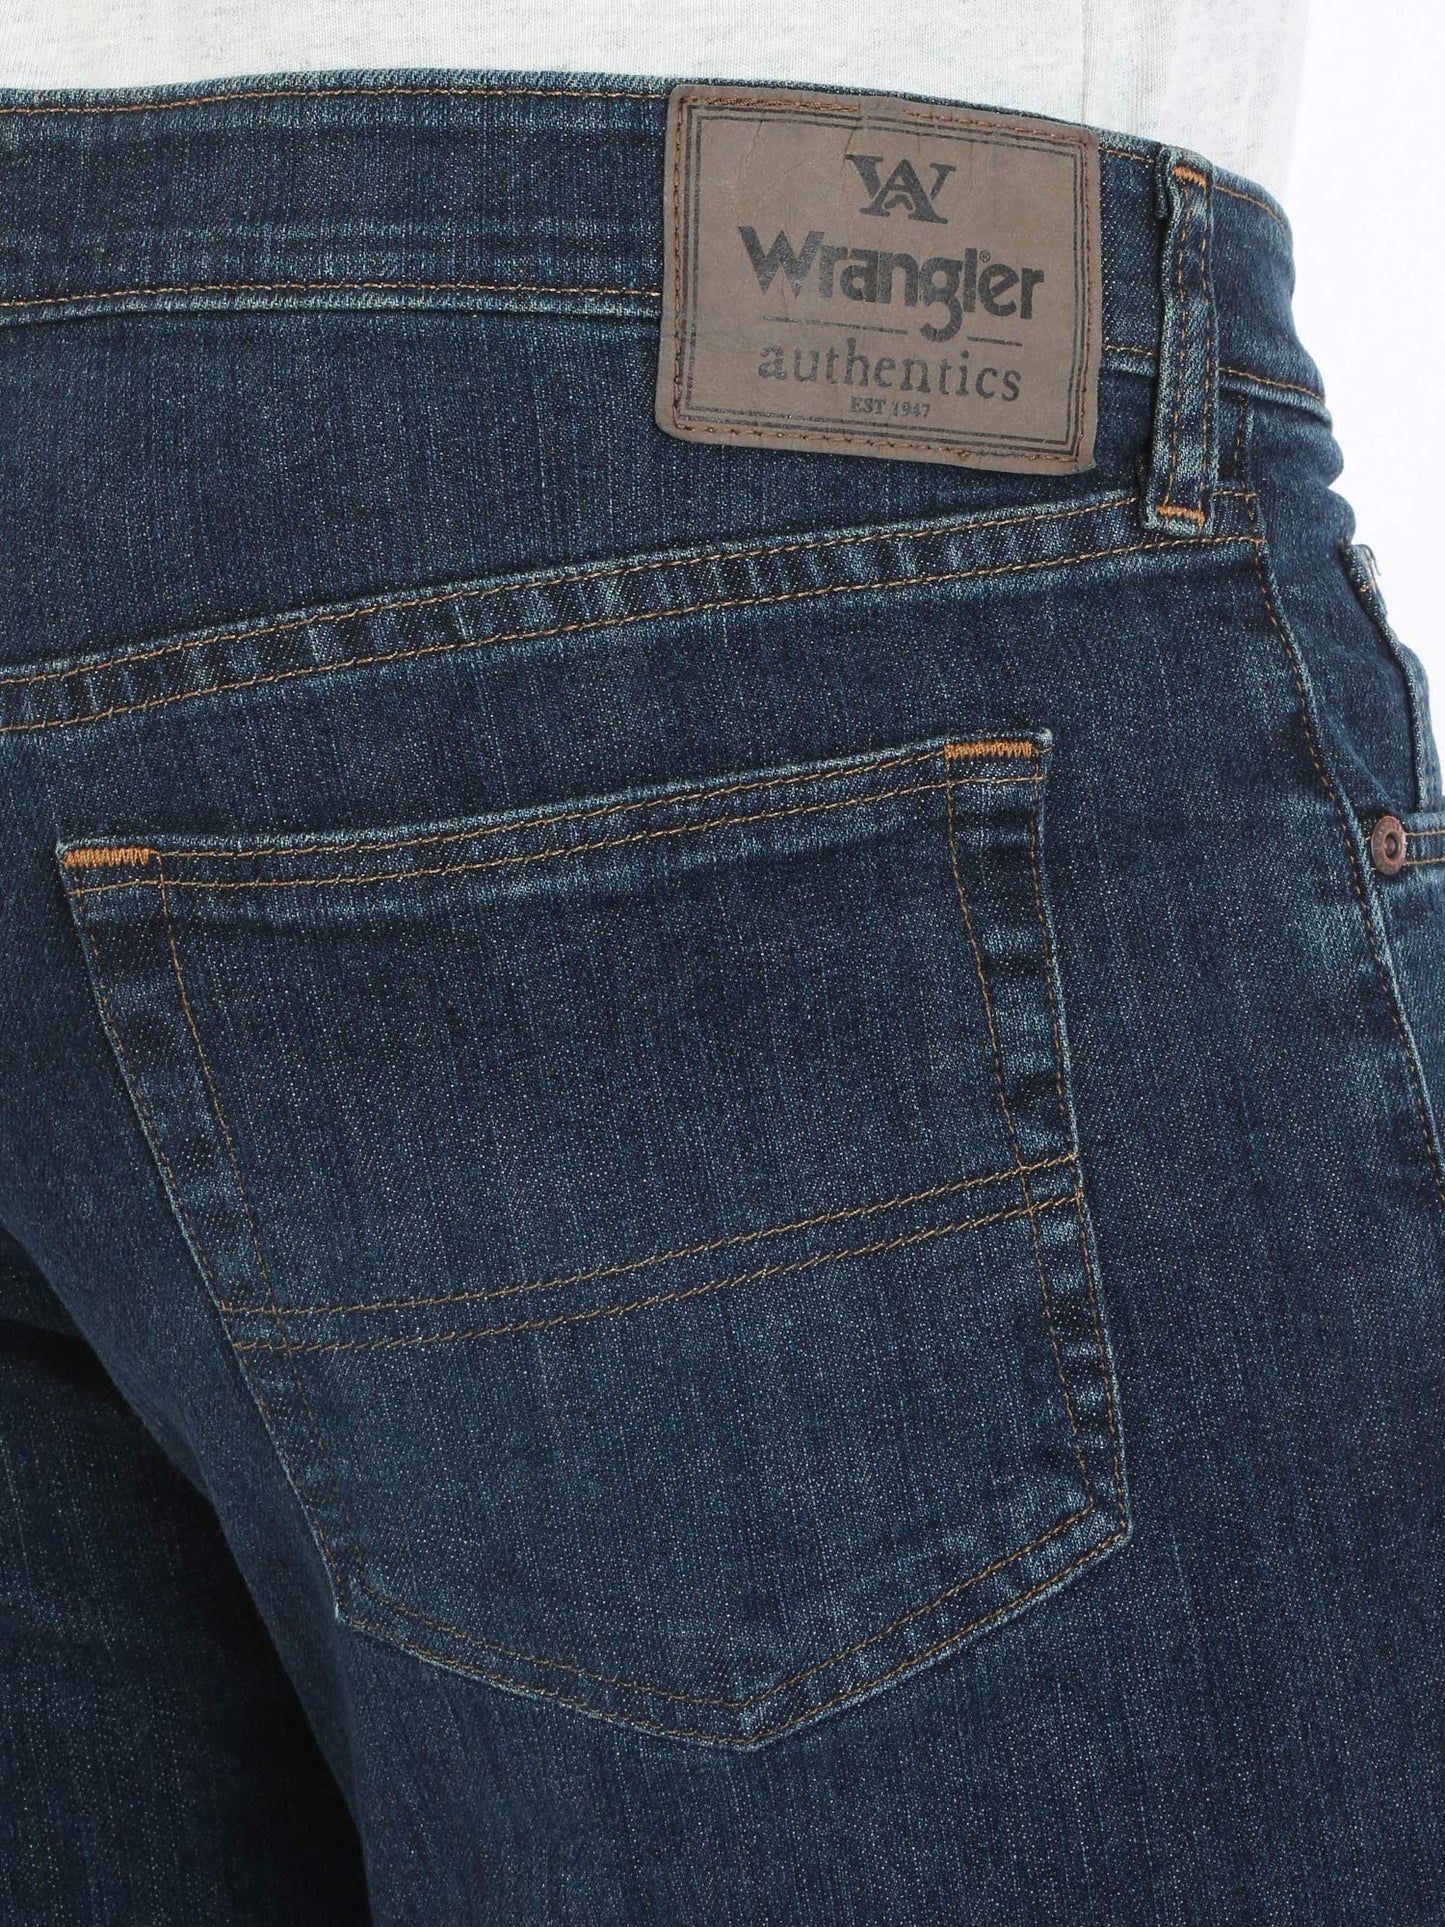 Wrangler Authentics Men's Comfort Flex Waist Relaxed Fit Jean, Carbon, 38W X 36L